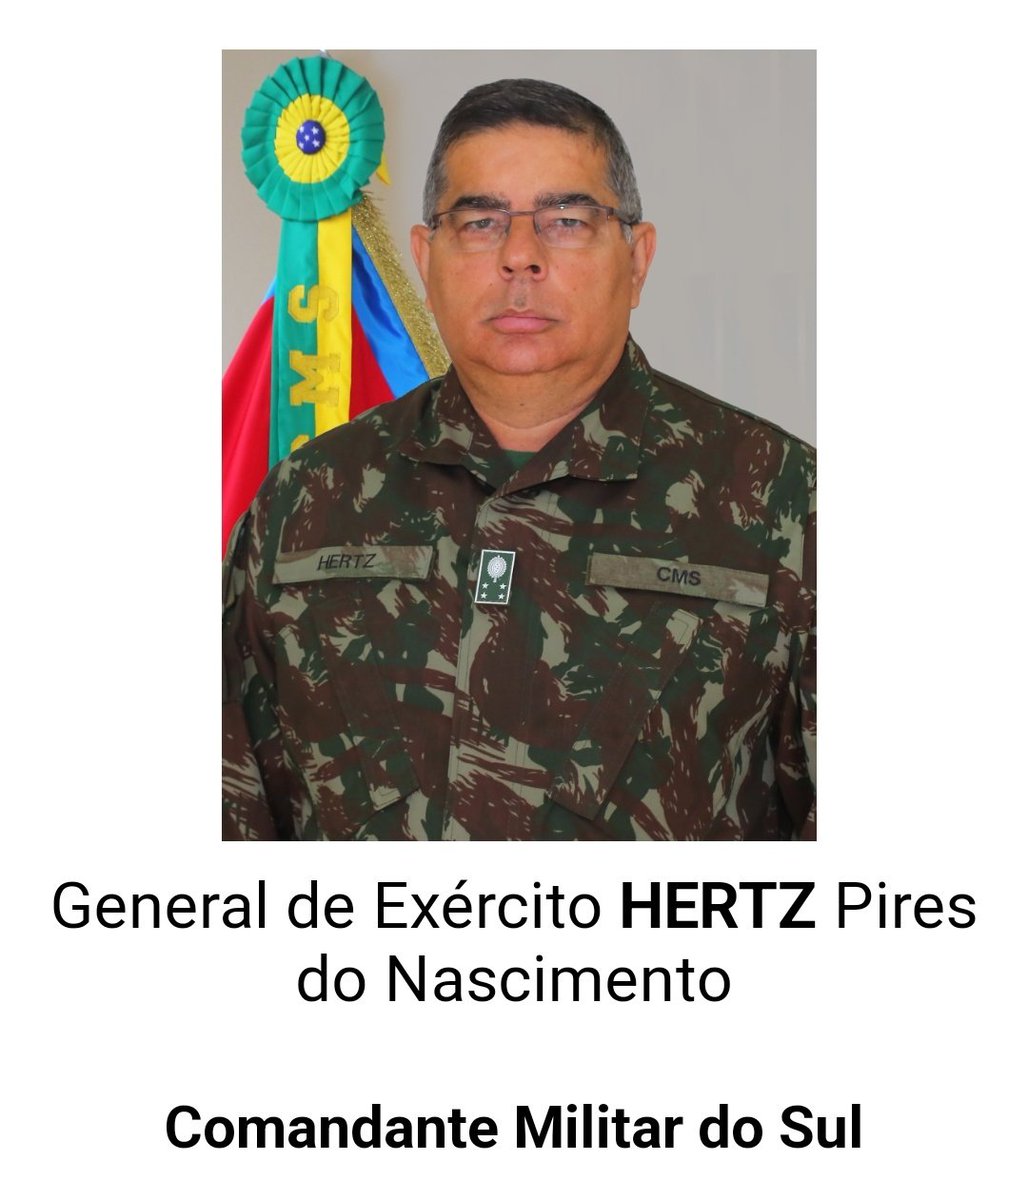 Esse é o general quatro estrelas HERTZ PIRES DO NACIMENTO, o CPF por trás da farda de comandante militar do Sul que até agora não fez nada pelo povo gaúcho.